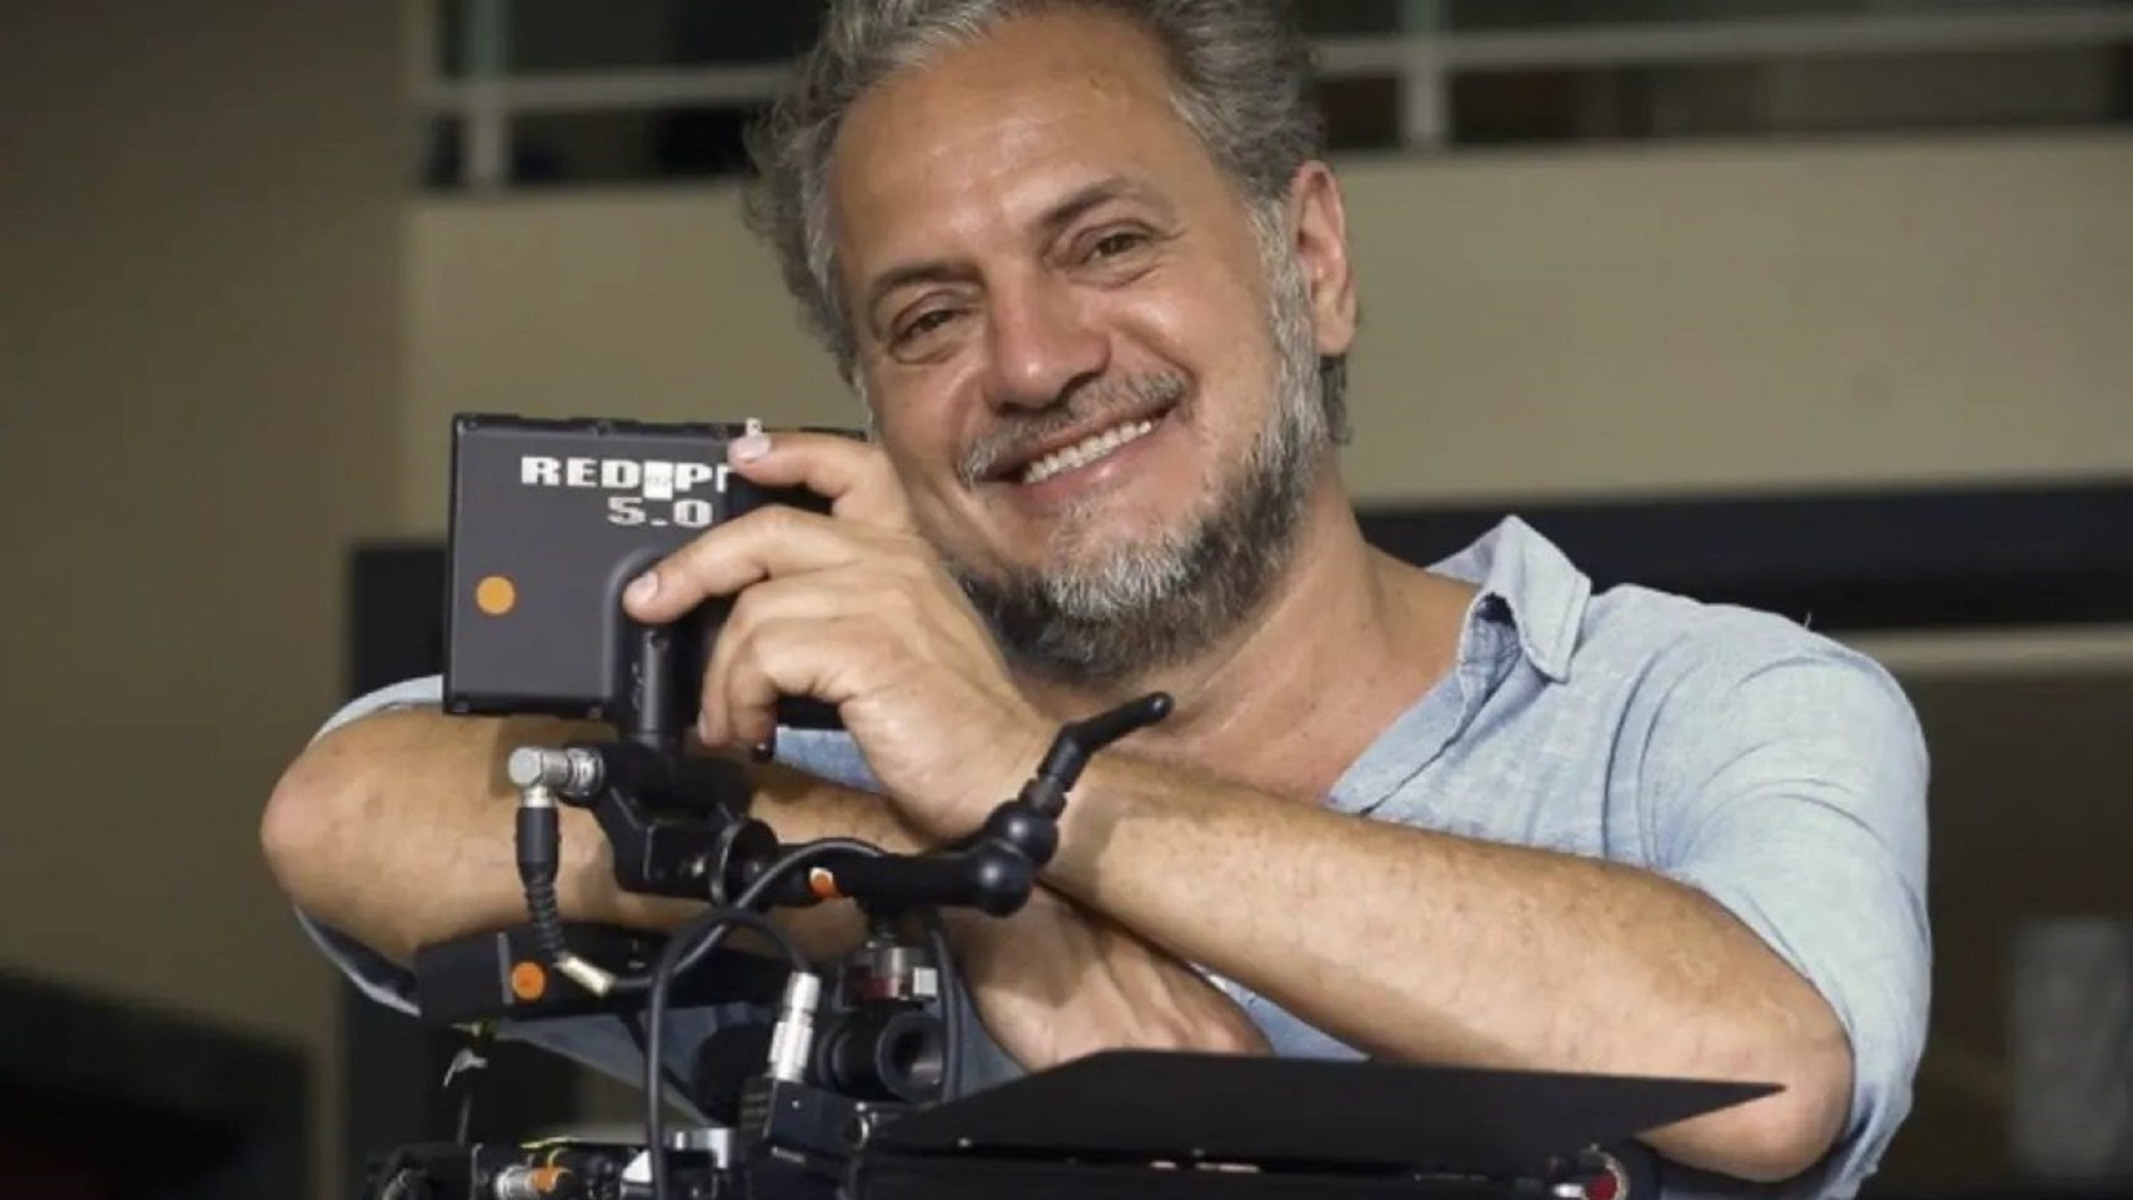 Morre Breno Silveira, aos 58 anos; diretor de Dois Filhos de Francisco passou mal em set de filmagens em Pernambuco